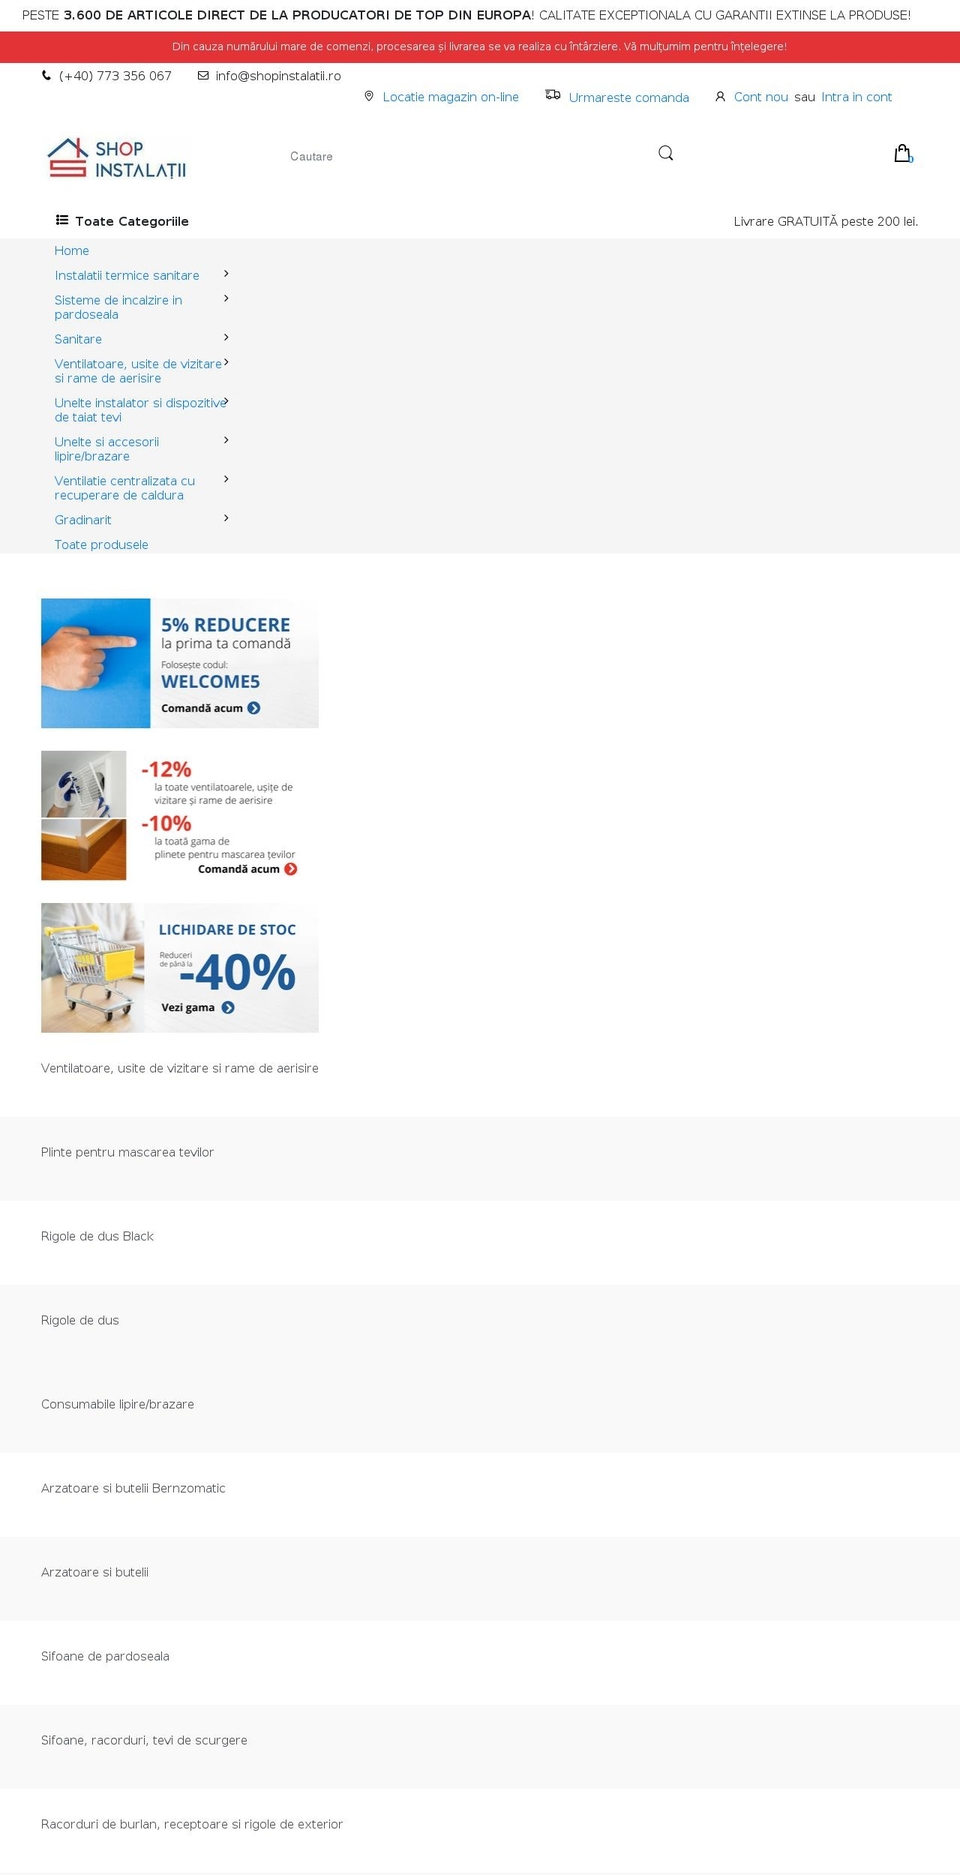 ELECTRO Shopify theme site example shopinstalatii.ro